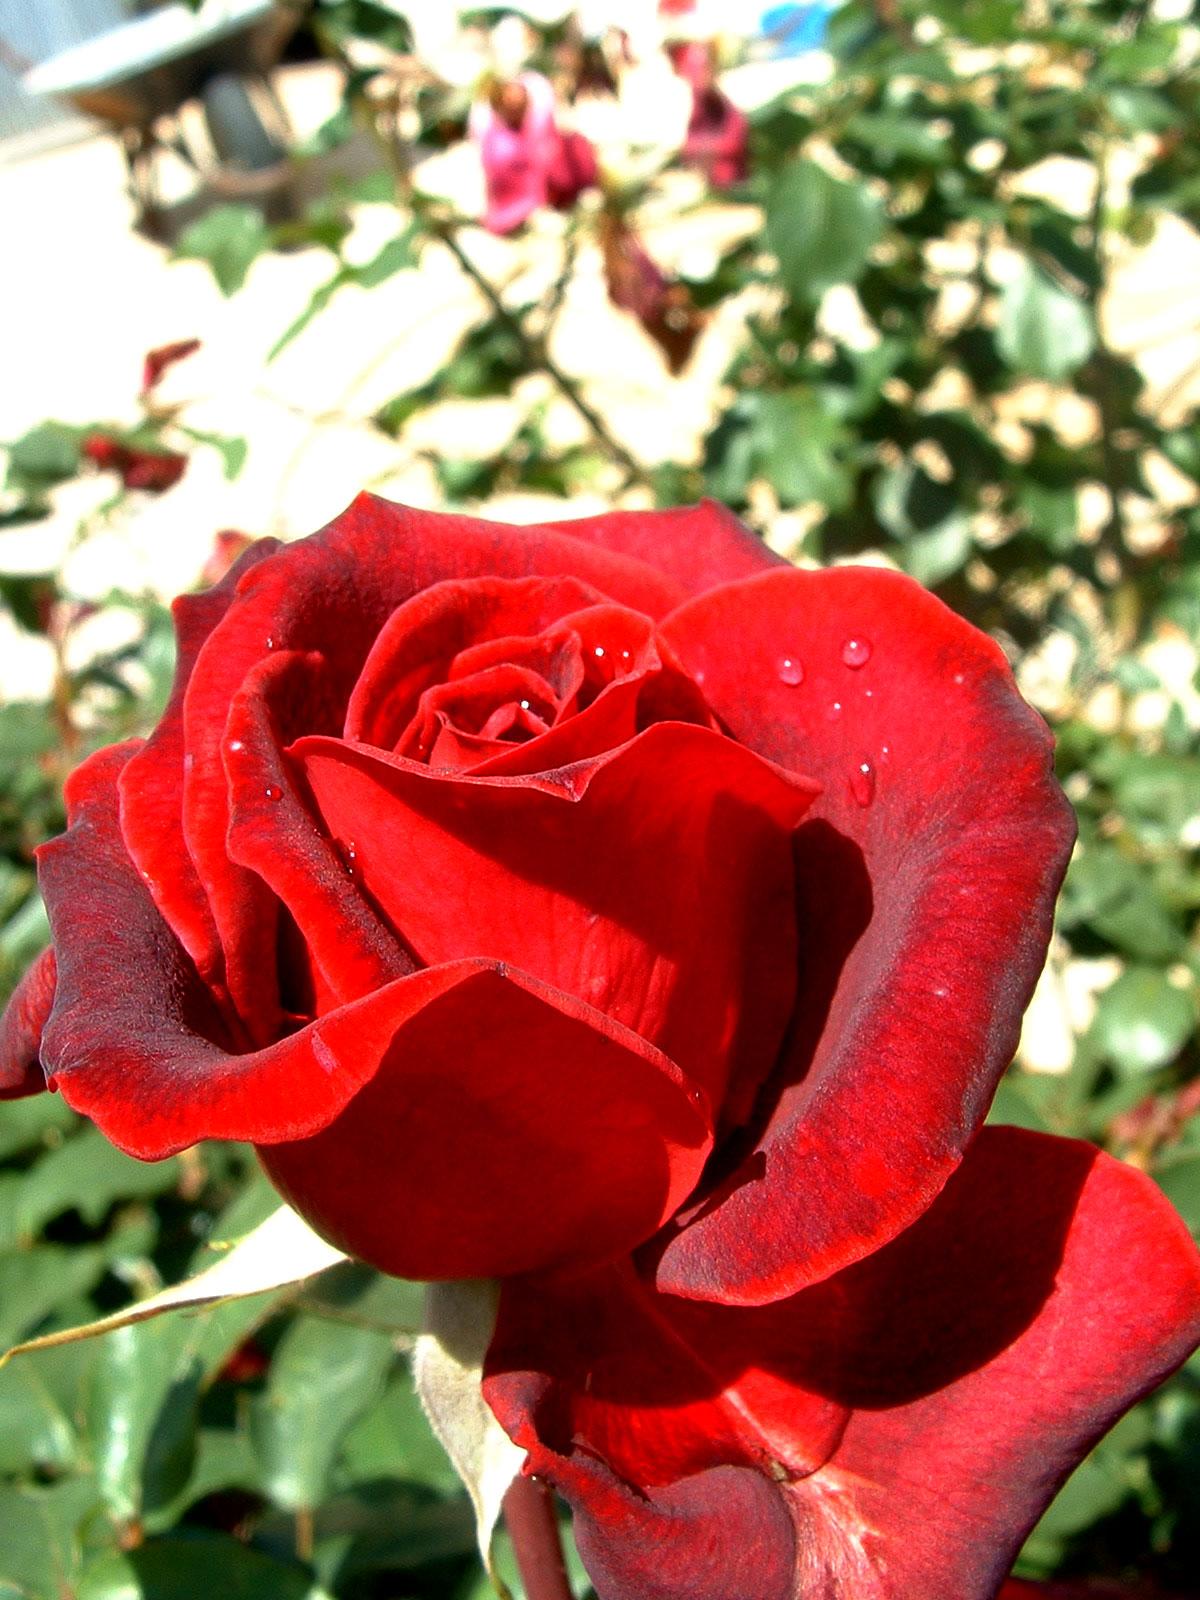 Las rosas rojas - Vida en la tierra